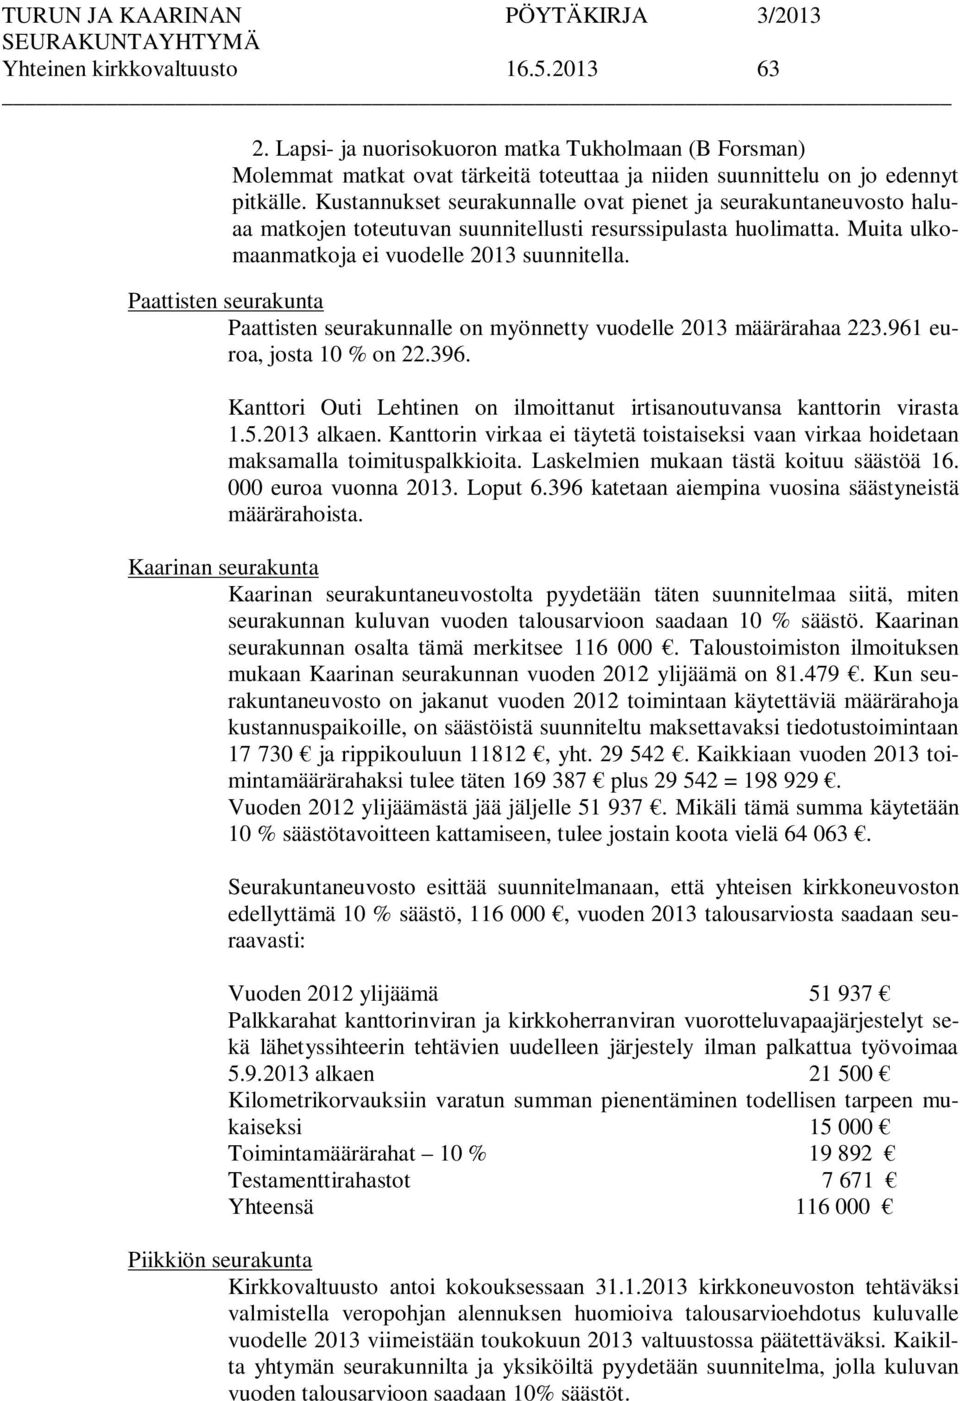 Paattisten seurakunta Paattisten seurakunnalle on myönnetty vuodelle 2013 määrärahaa 223.961 euroa, josta 10 % on 22.396. Kanttori Outi Lehtinen on ilmoittanut irtisanoutuvansa kanttorin virasta 1.5.